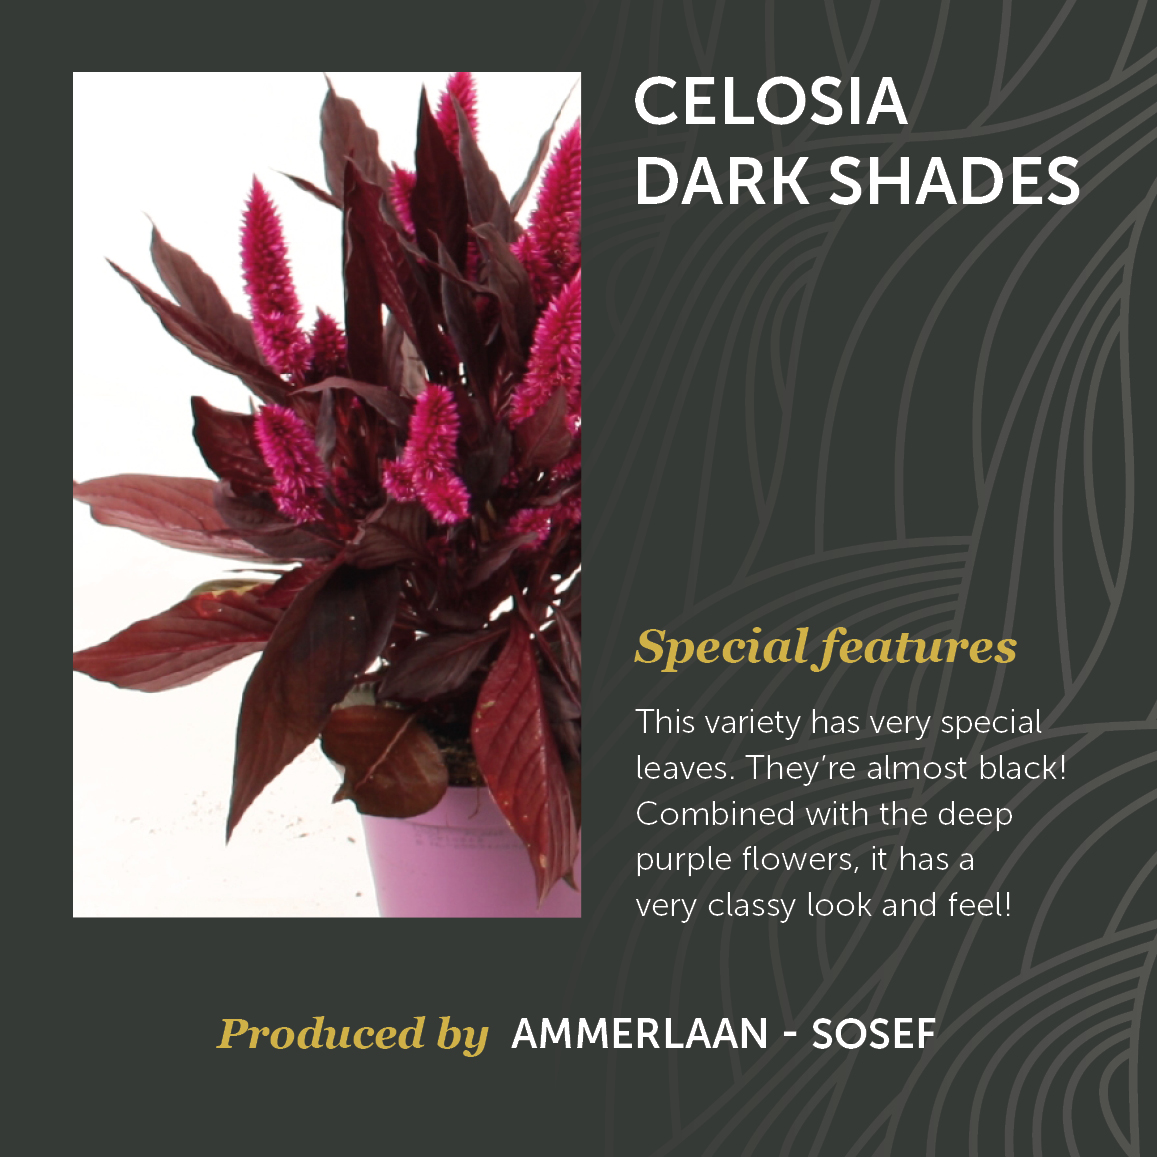 Celosia Dark Shades